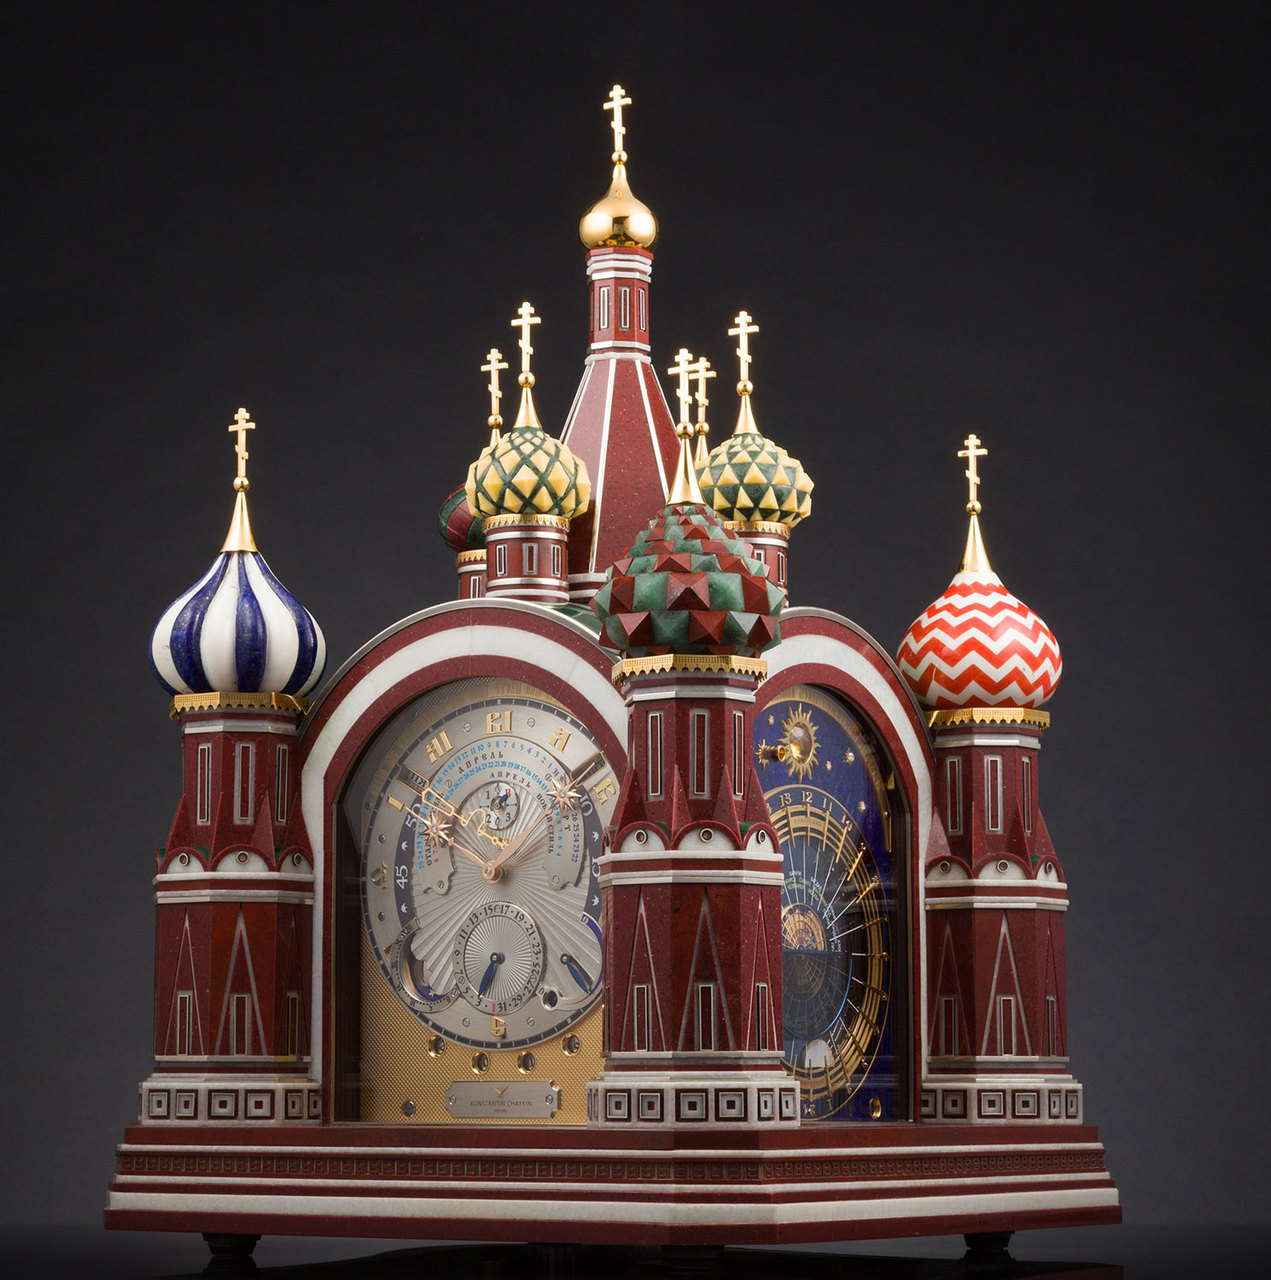 Часы «Московская Пасхалия» были представлены на выставке